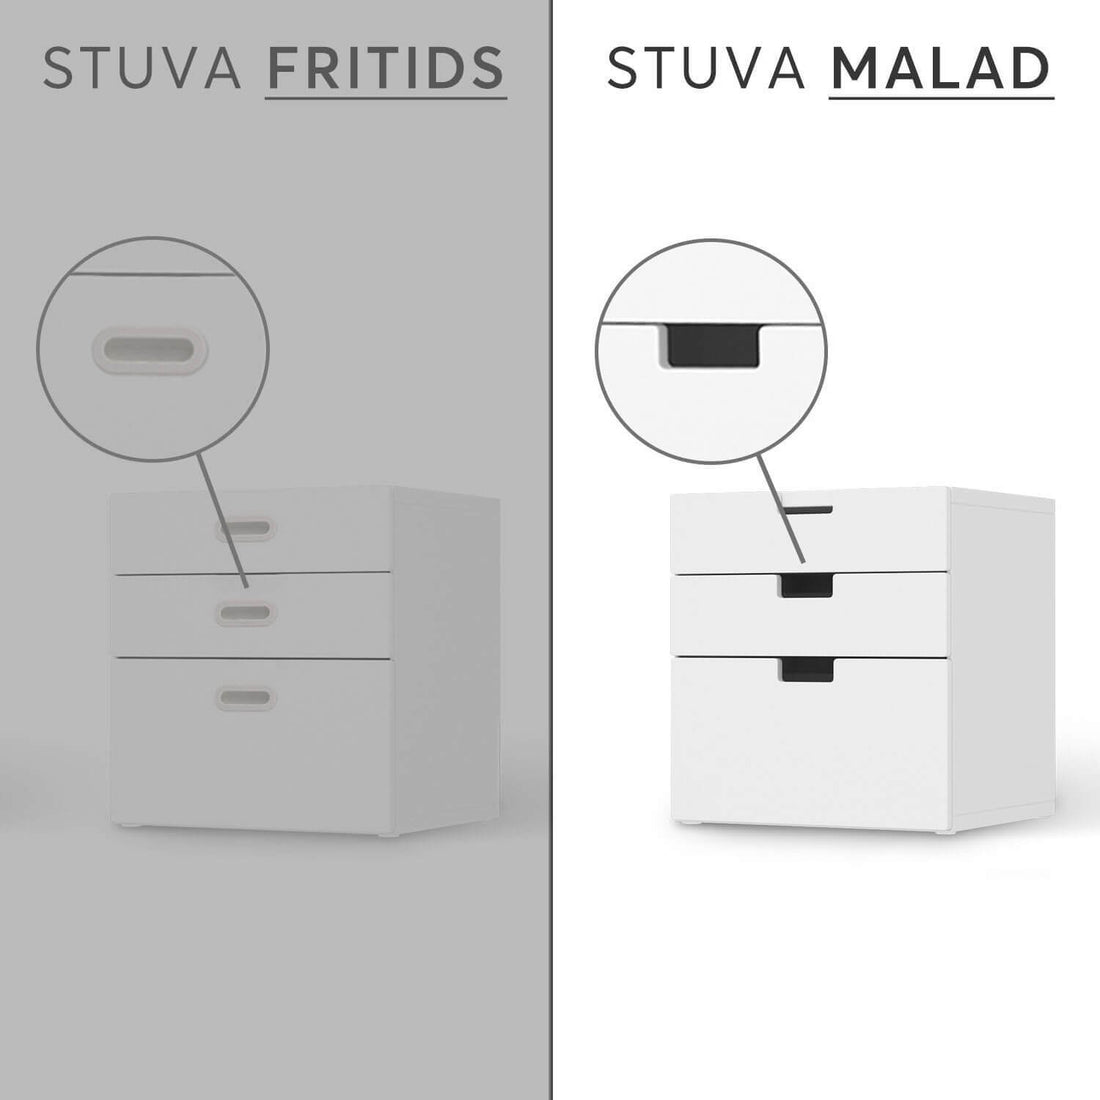 Folie für Möbel IKEA Stuva / Malad Kommode - 3 Schubladen - Design: La Tour Eiffel